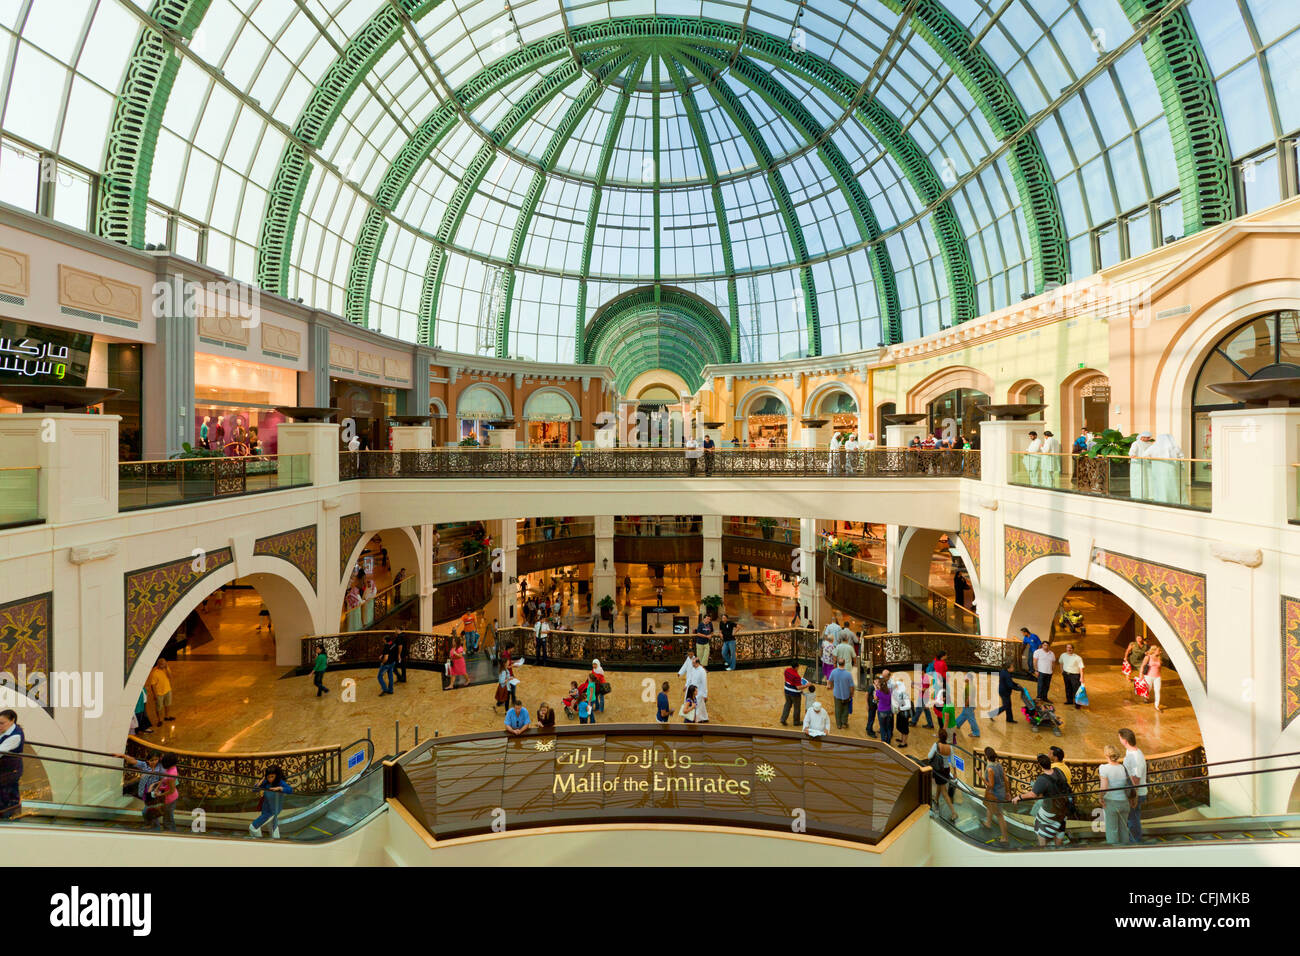 Centro Commerciale Mall of the Emirates interno, Dubai, Emirati Arabi Uniti, Medio Oriente Foto Stock